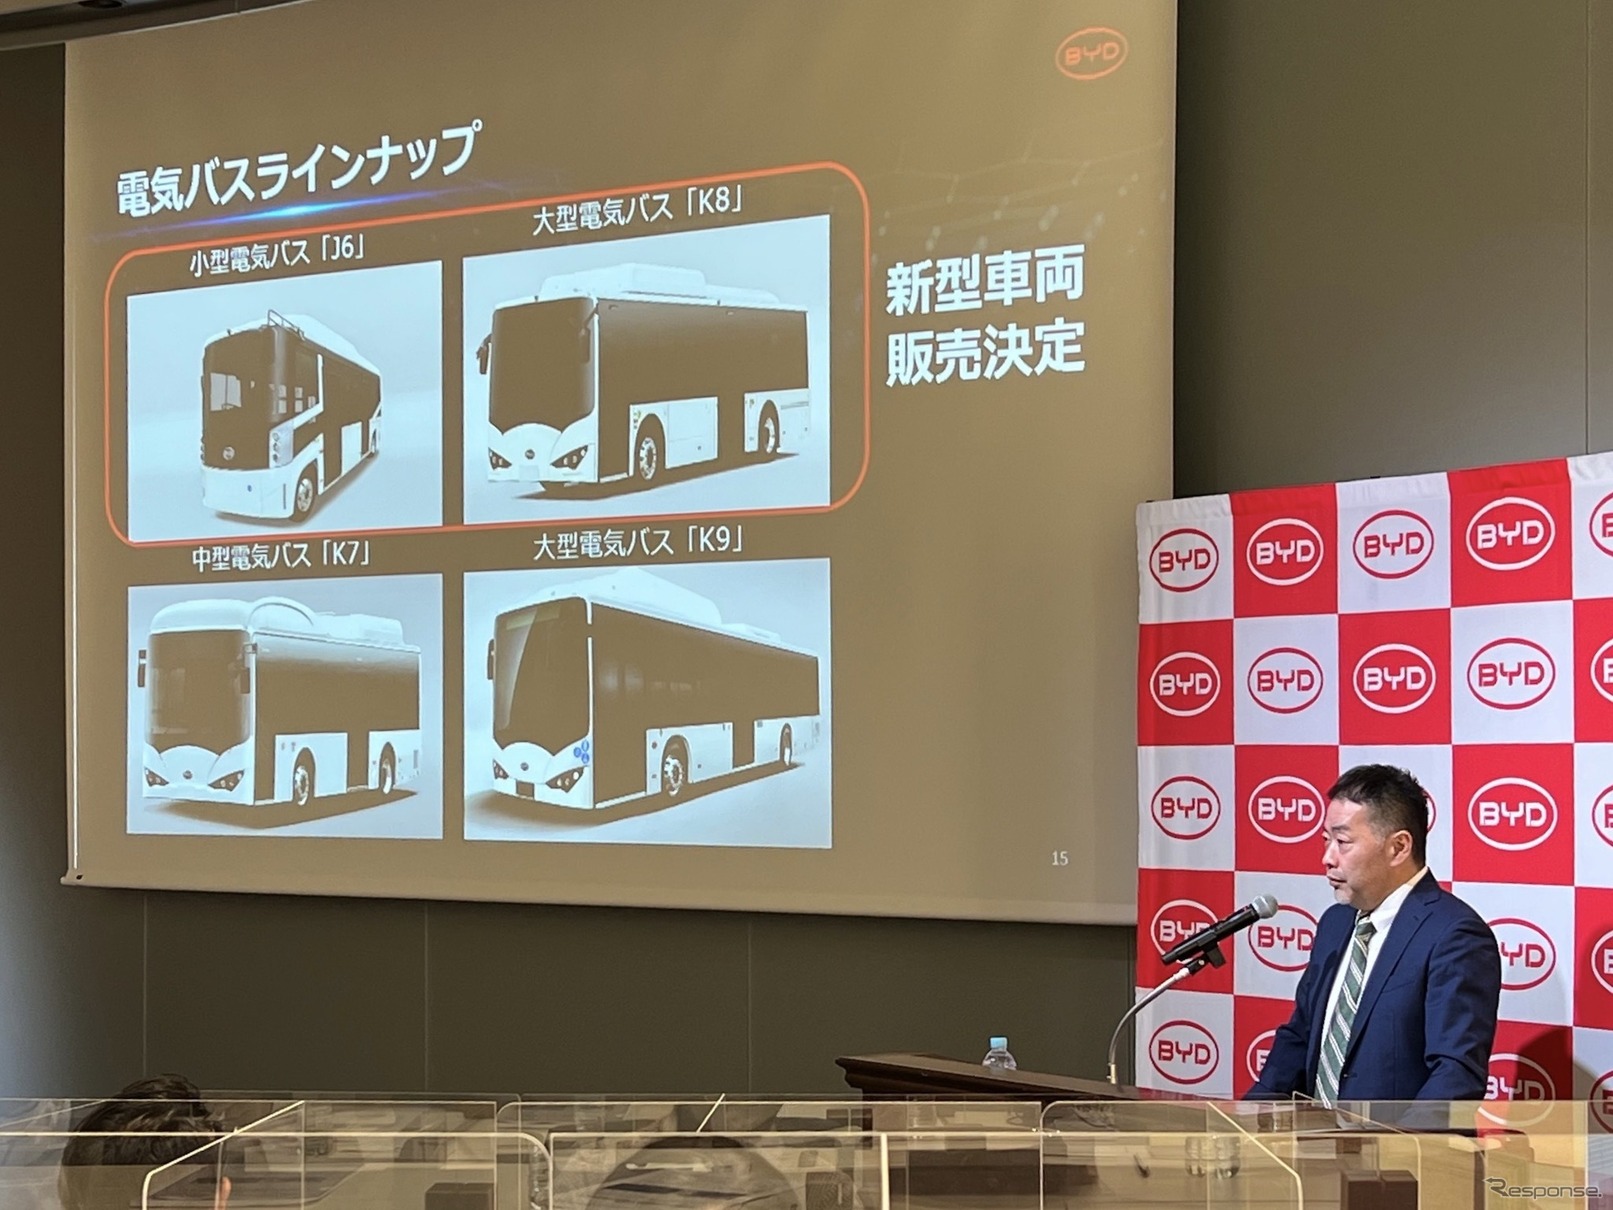 新型電気バスを発表するBYDジャパンの花田晋作取締役副社長